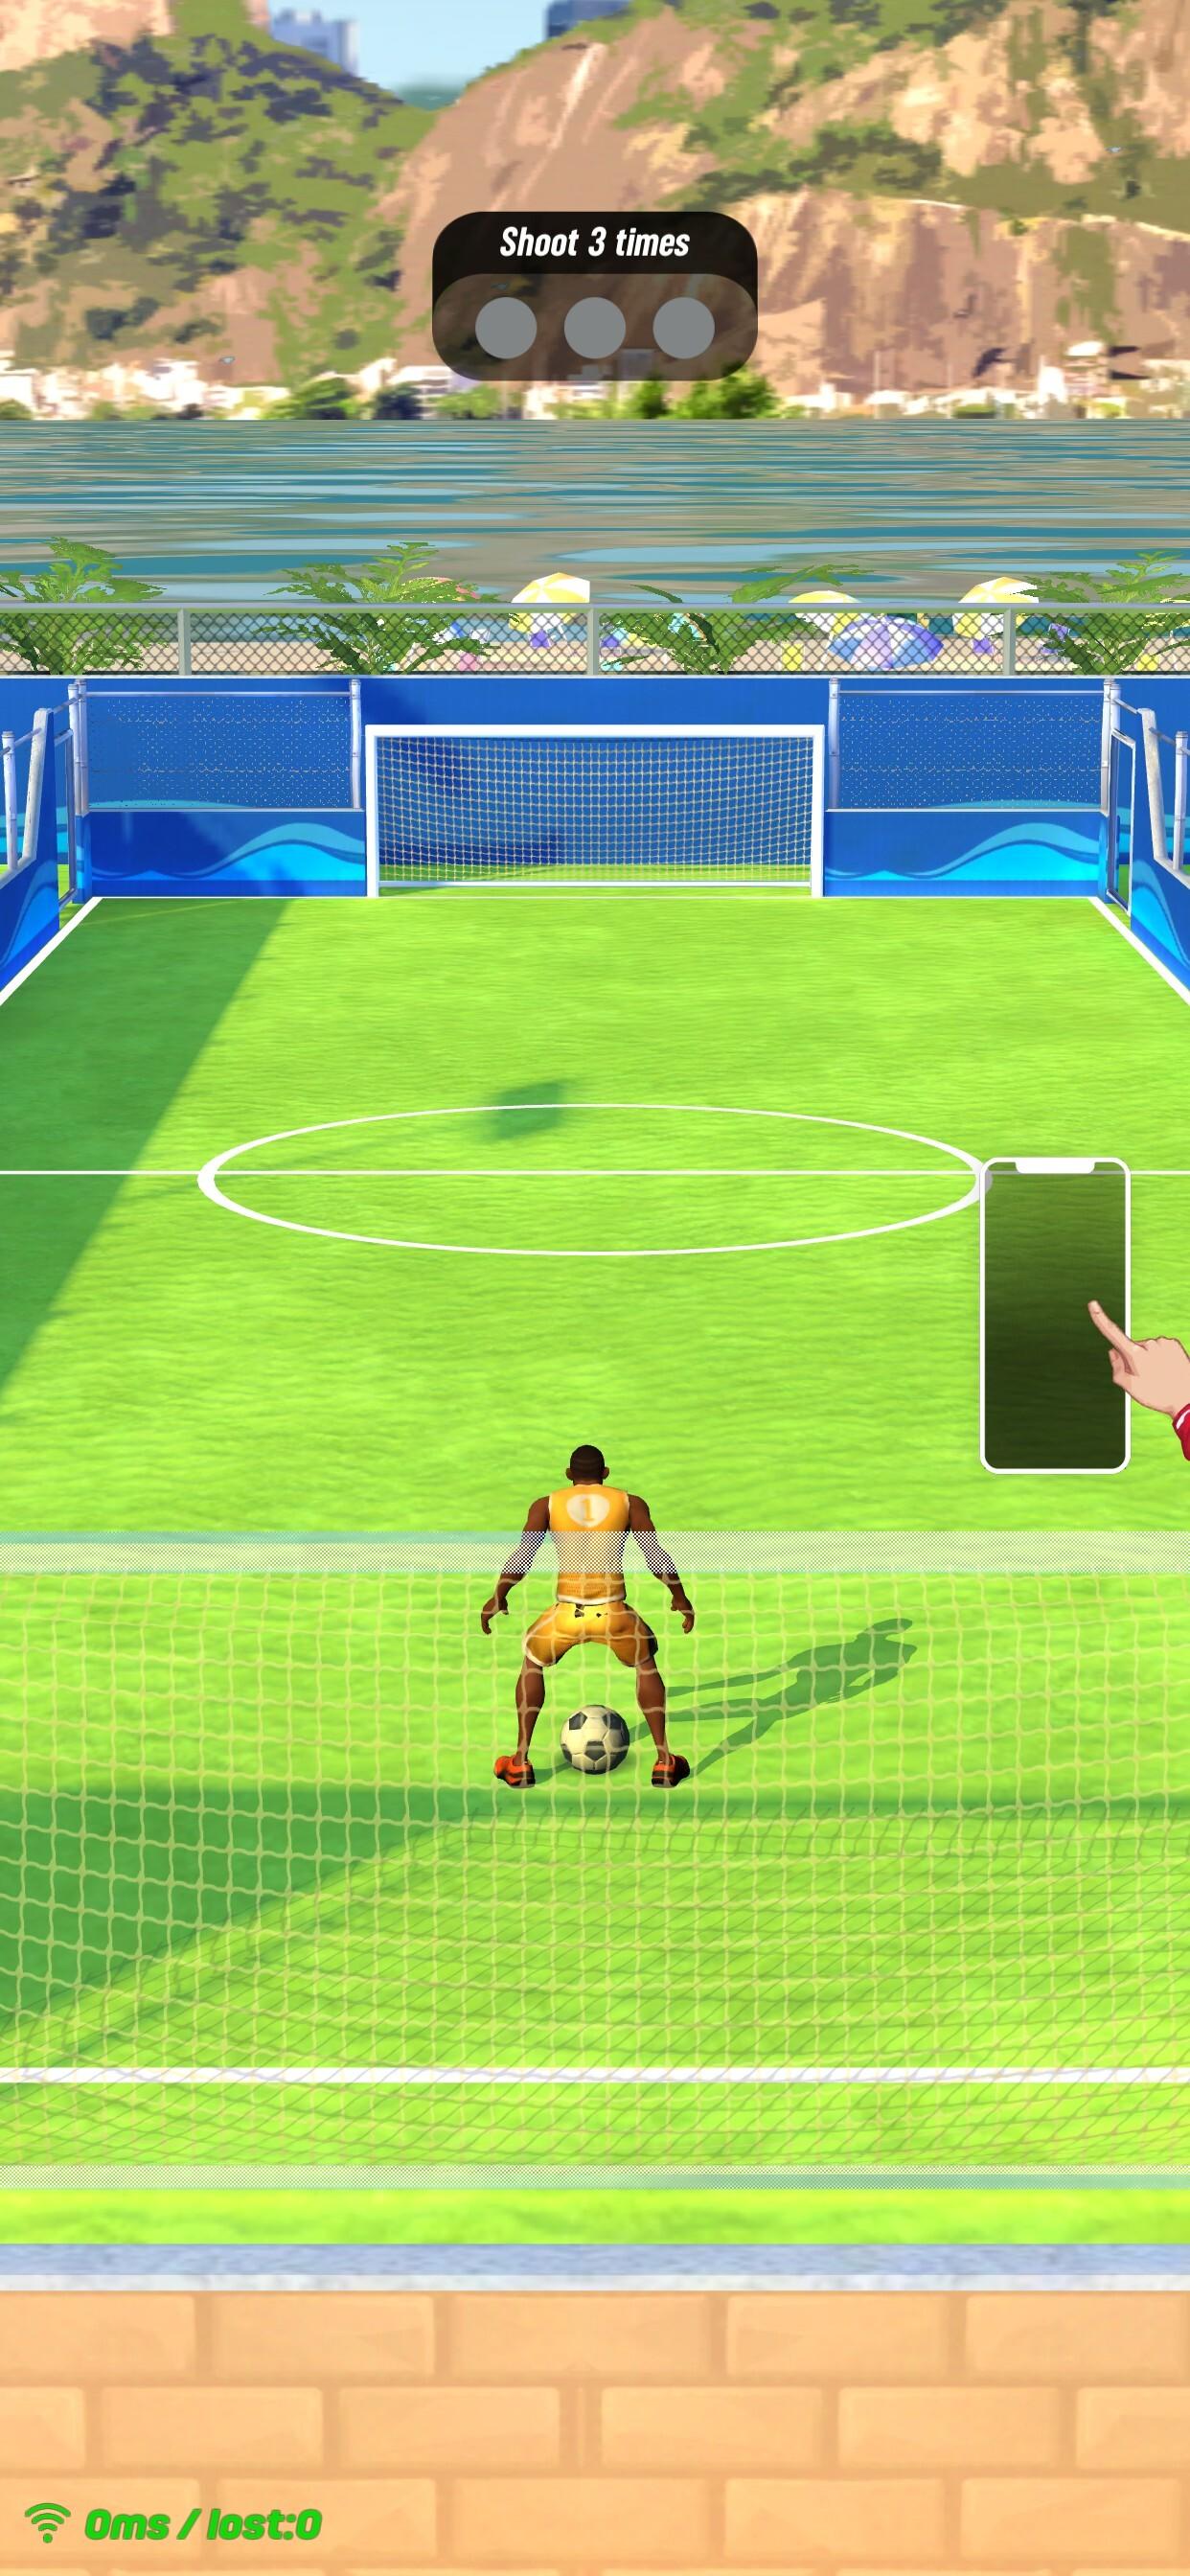 Screenshot 1 of Scontro di calcio: calcio in diretta 1.24.0